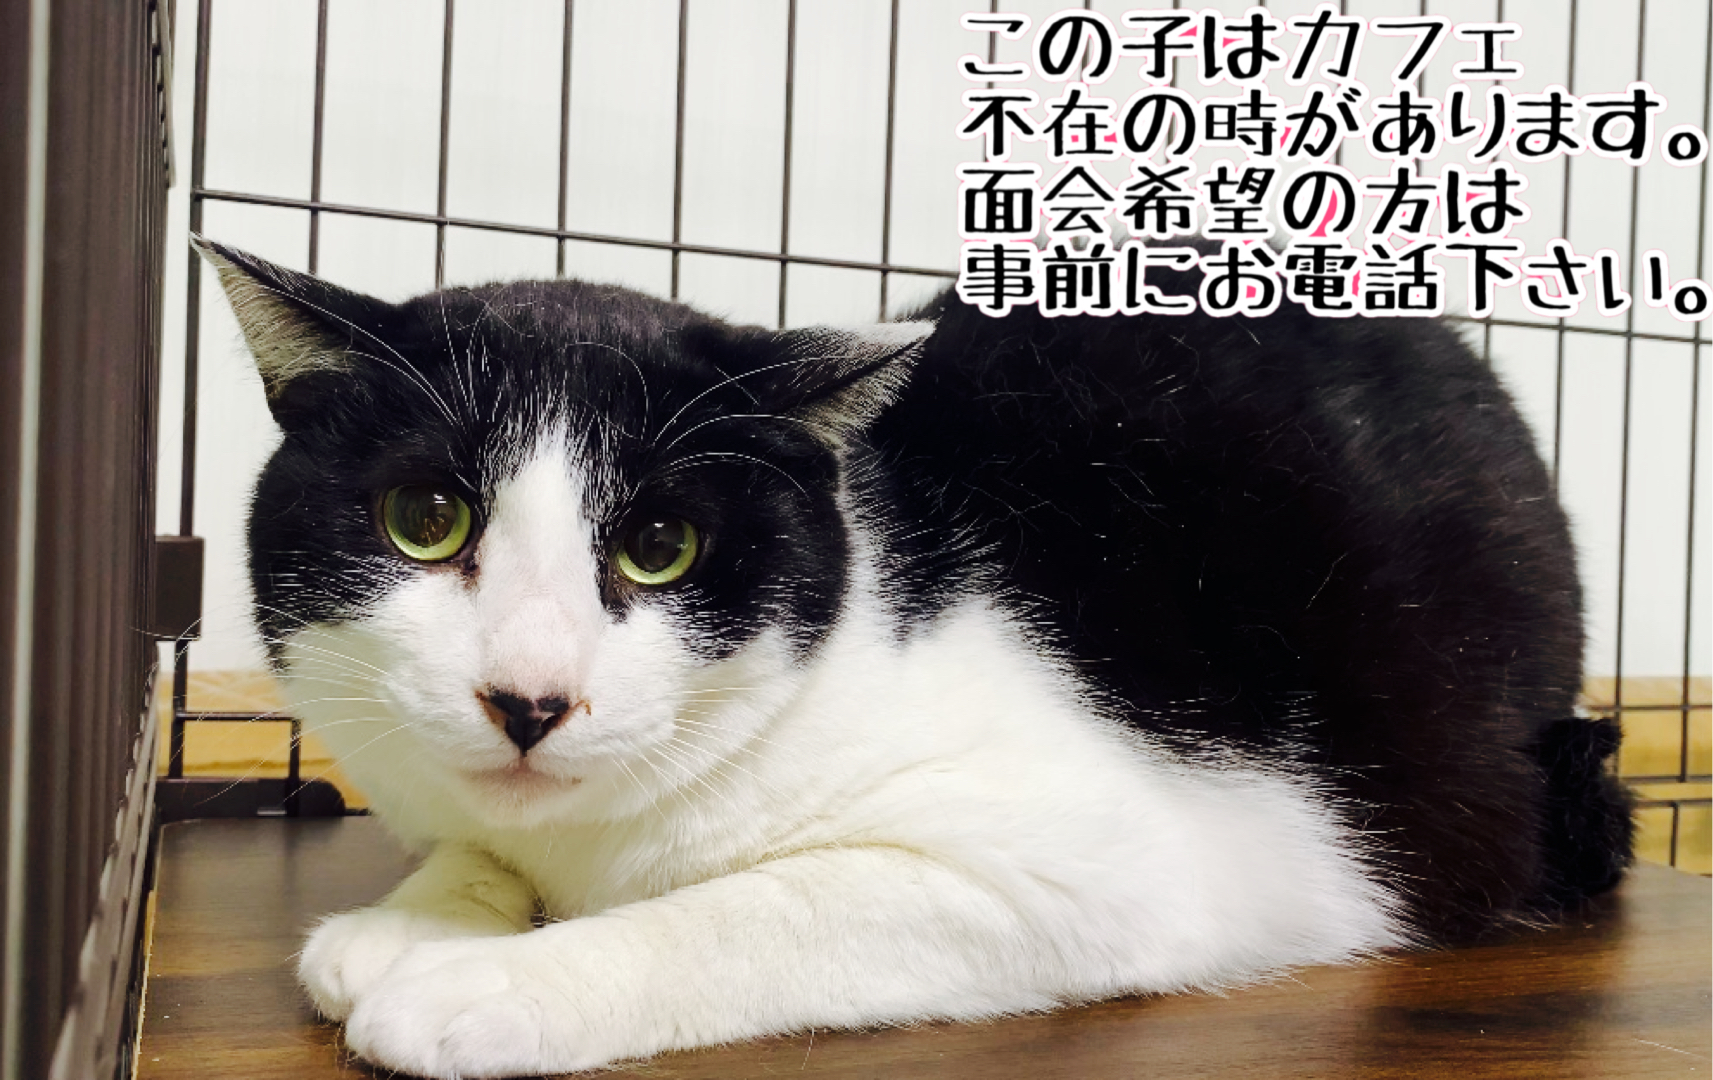 <ul>
<li>猫種：日本猫</li>
<li>名前（性別）：ゆめ()</li>
<li>年齢：2012～2014年頃生まれ</li>
<li>保護経緯：飼い主が高齢になり逝去され飼育困難</li>
</ul>
